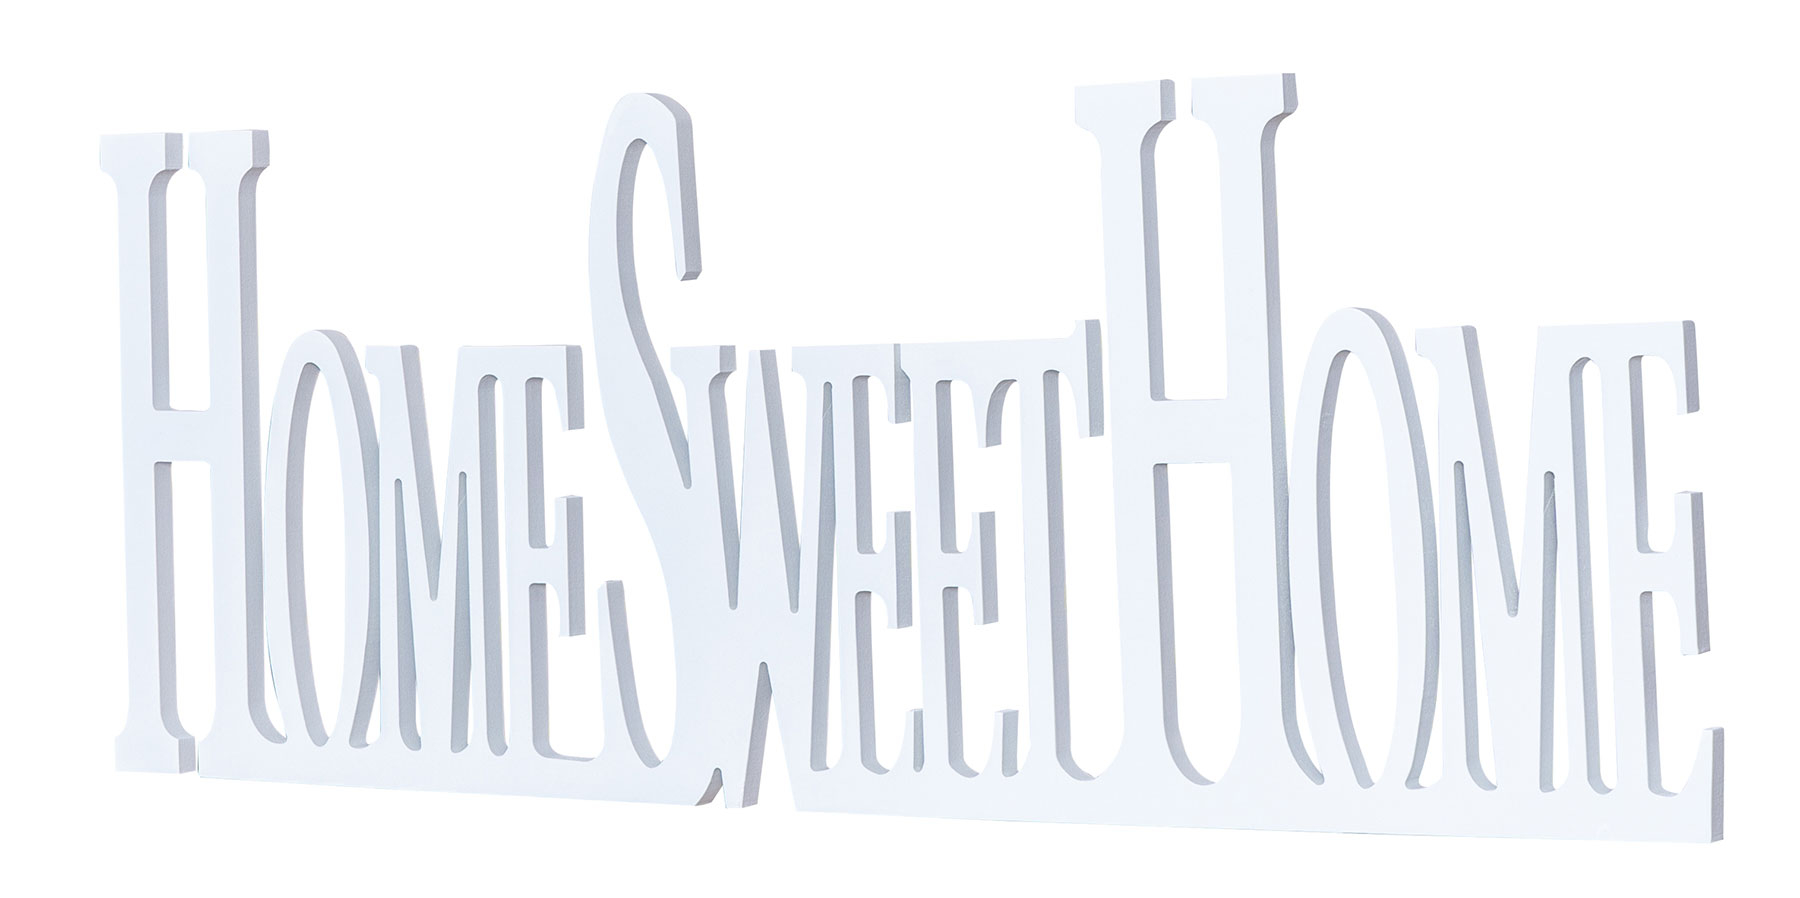 XXL Schriftzug Home Sweet Home 74x29cm Weiß Wandbild Wanddeko Buchstaben Deko